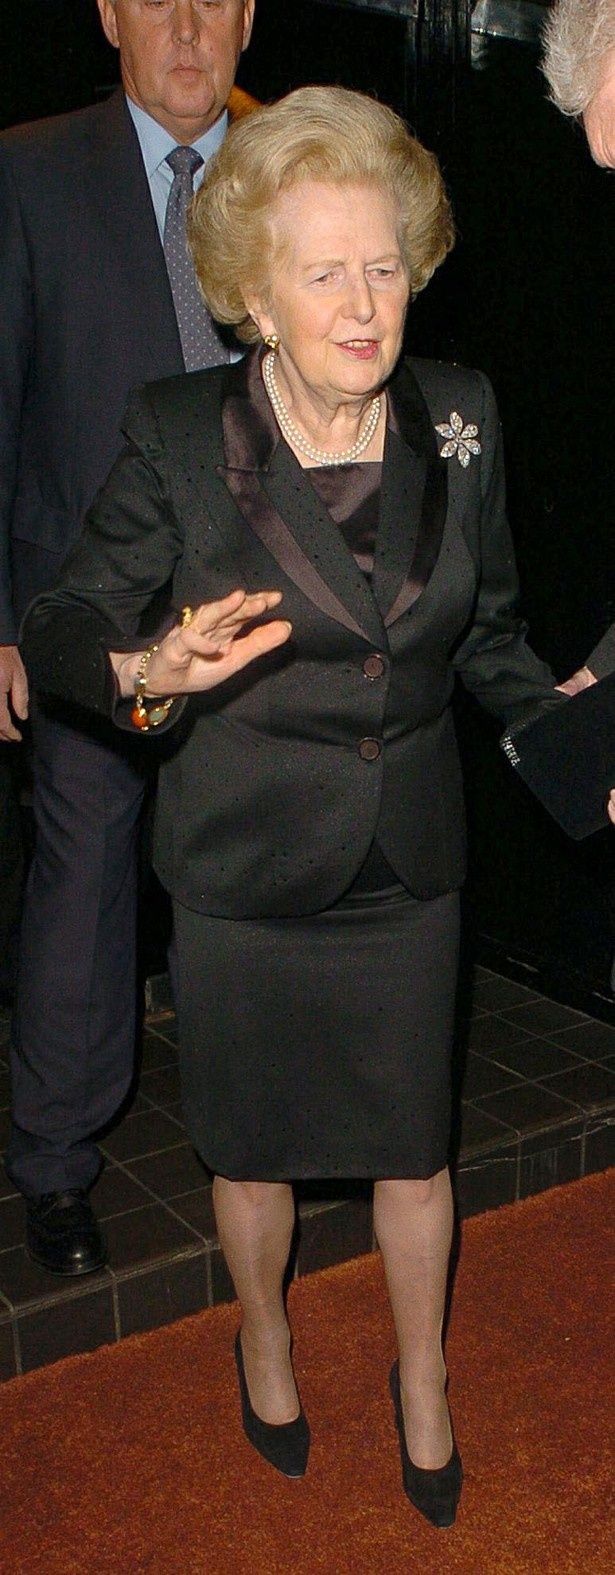 イギリス史上初、そして唯一の女性首相であるマーガレット・サッチャー